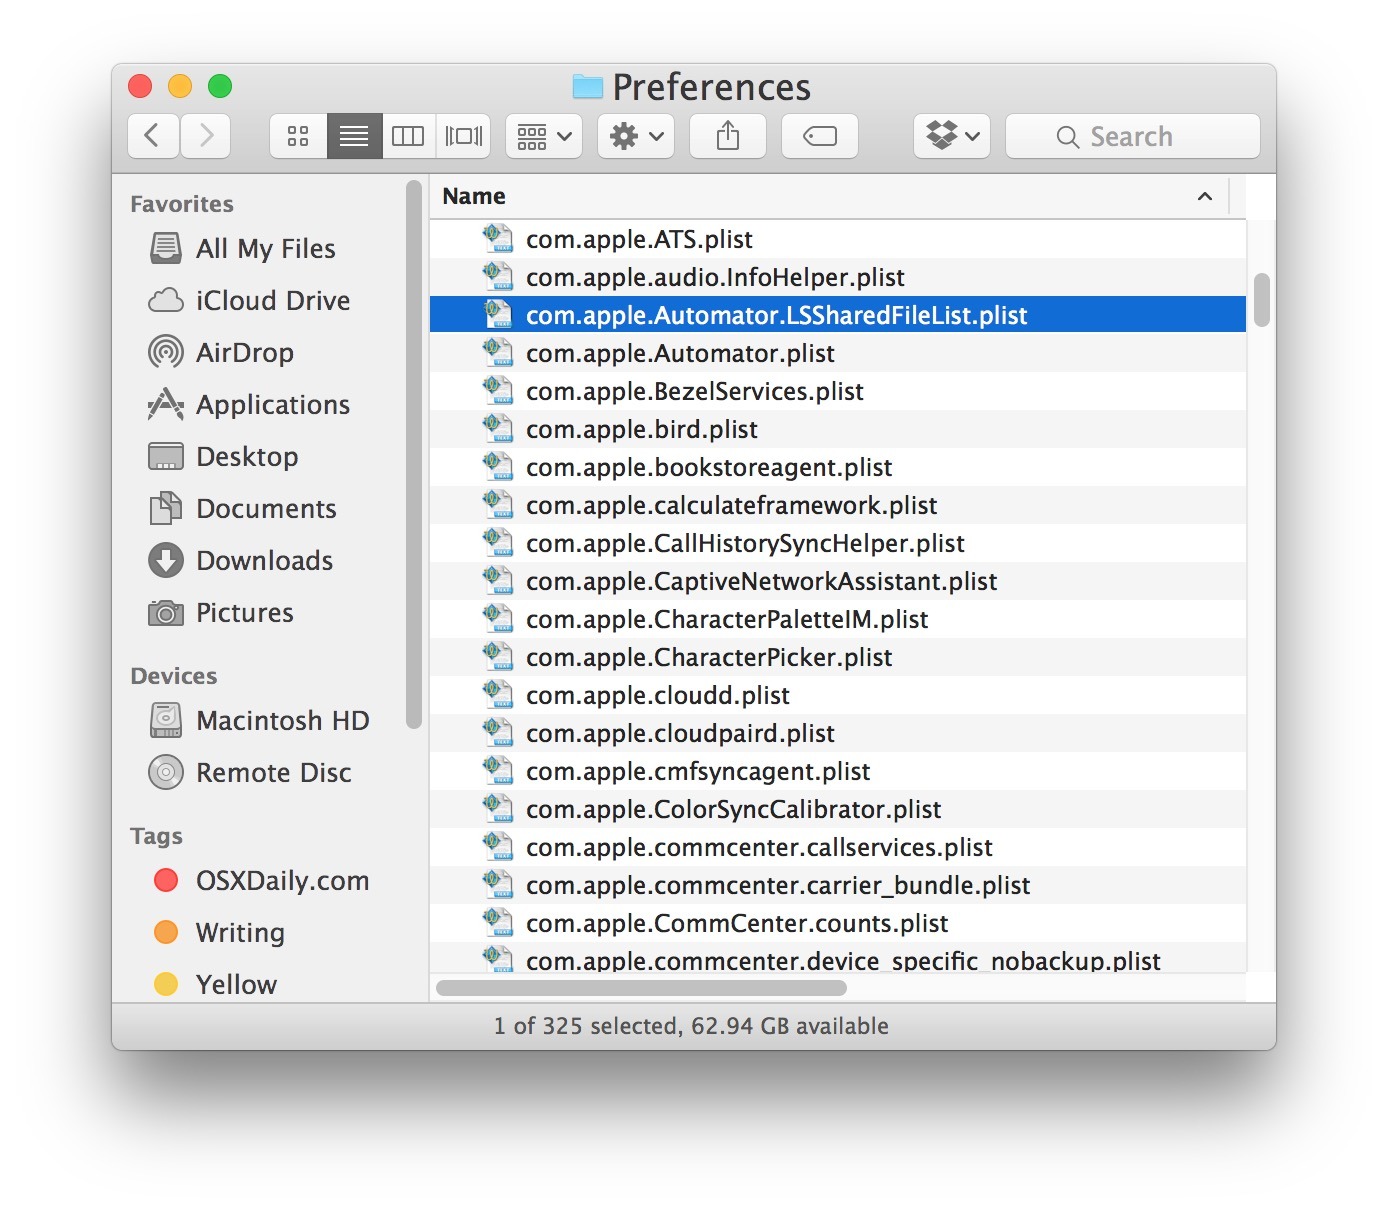 Le dimensioni ridotte dei caratteri sono predefinite in Mac OS X Finder